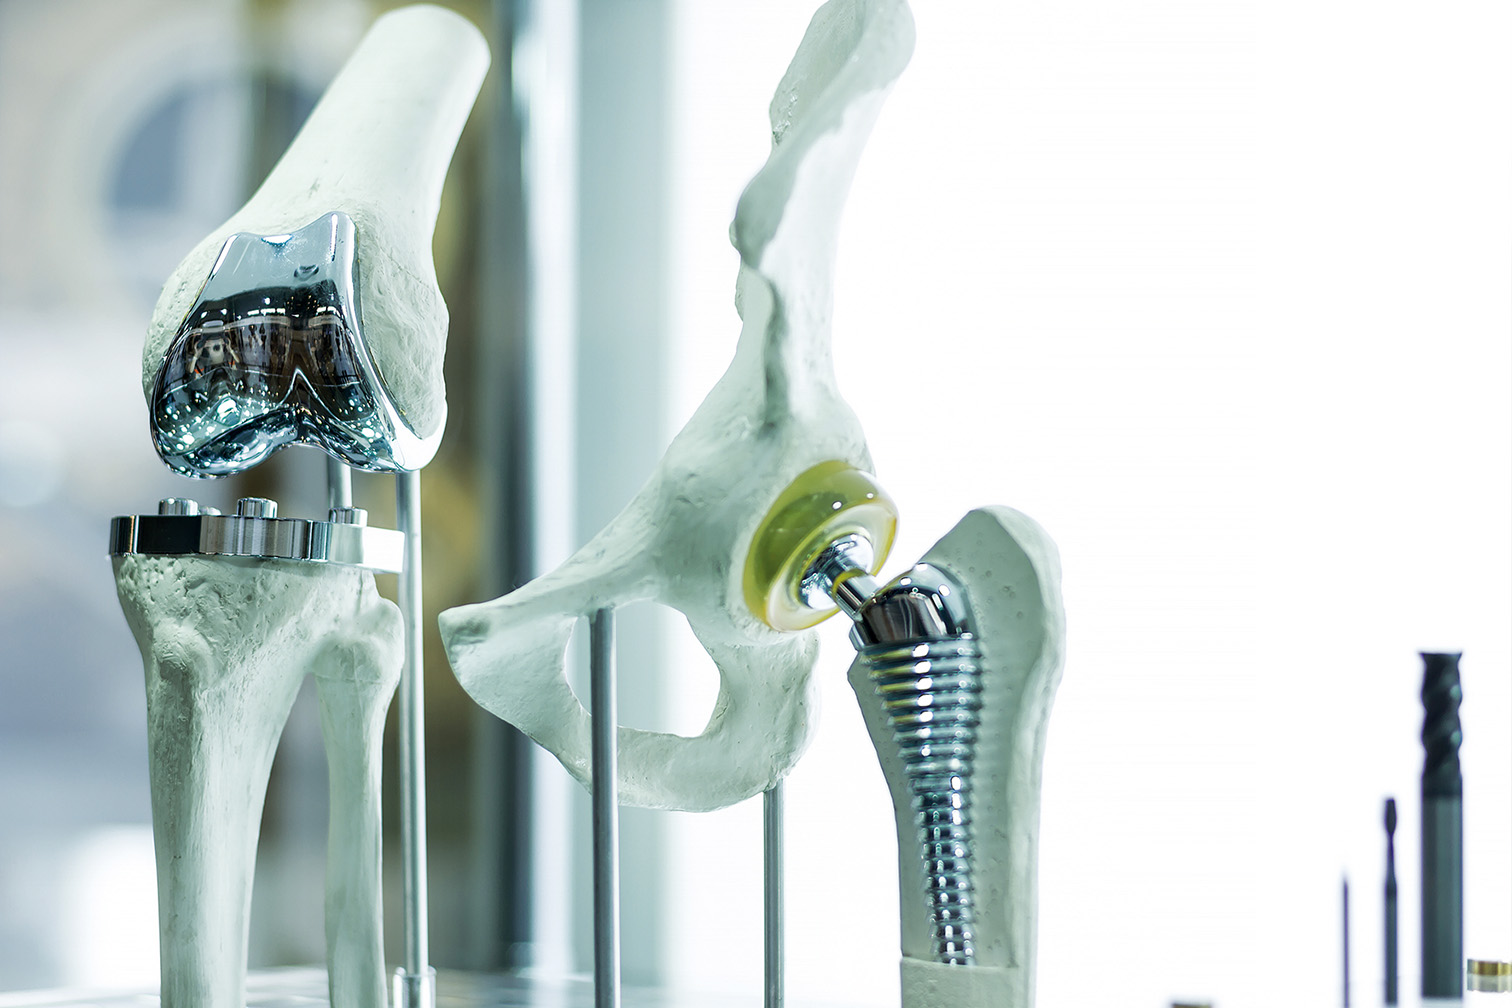 Hüft- und Knieendoprothetik mit modernster Robotertechnologie